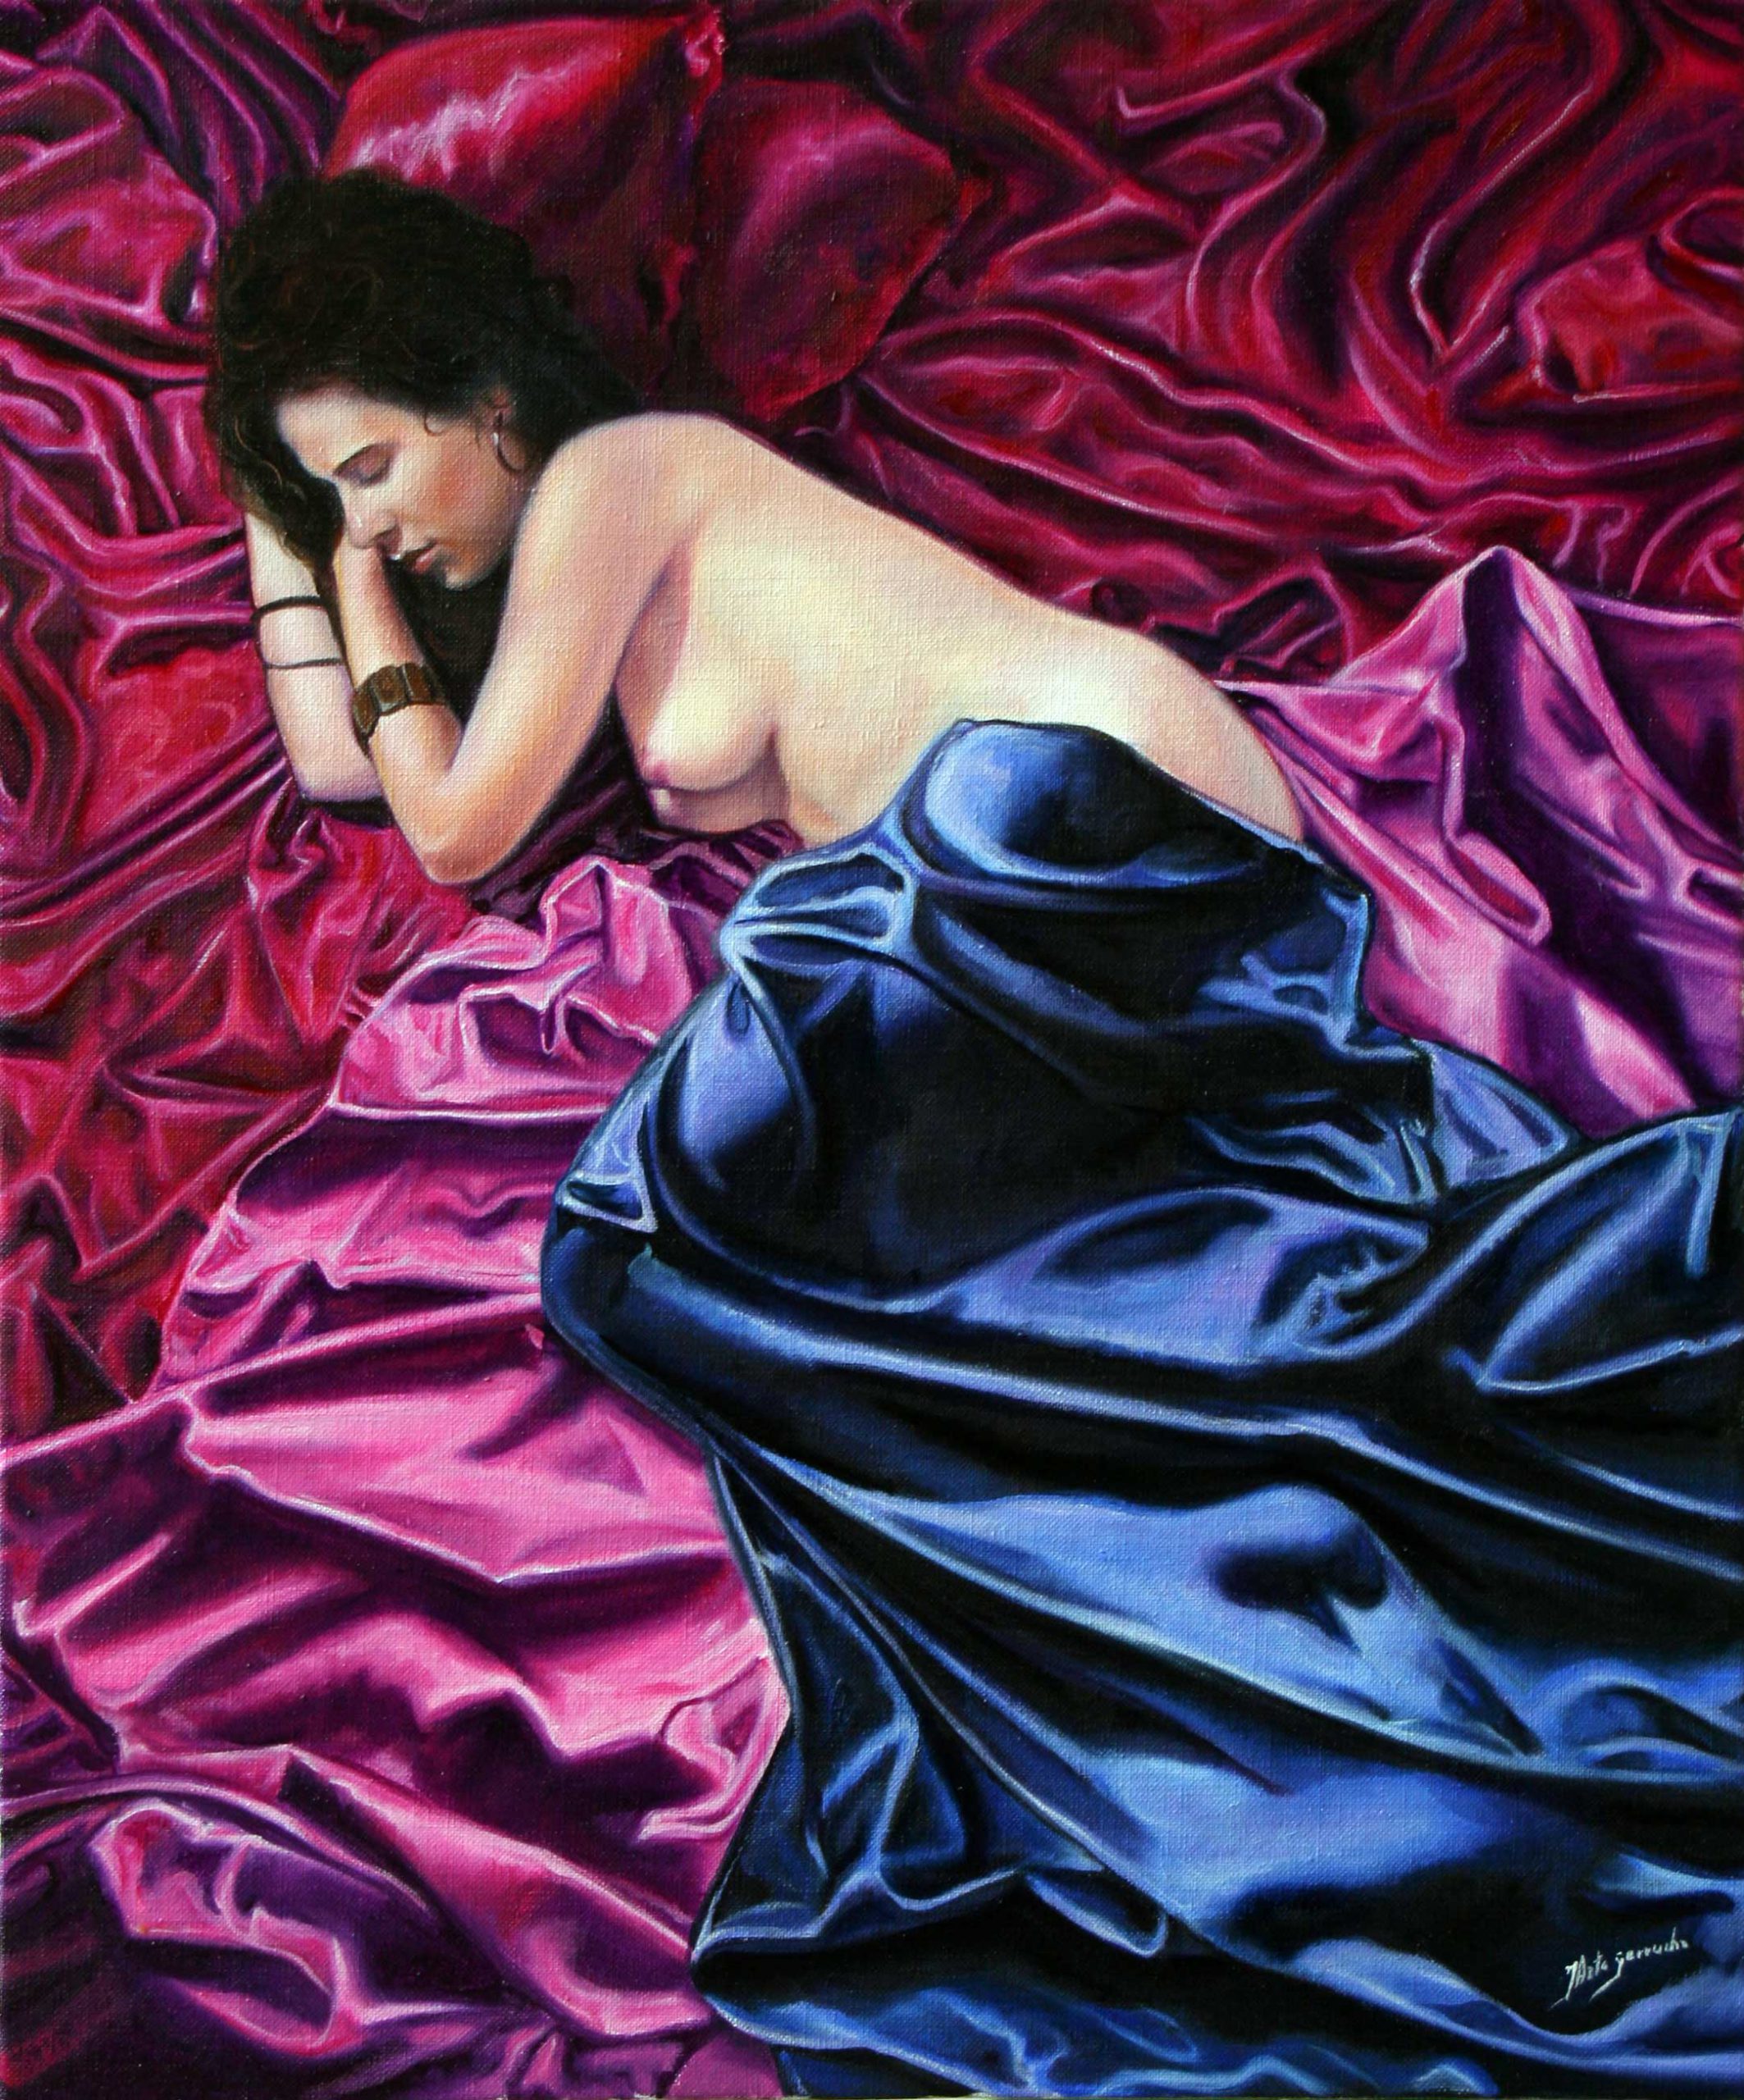 Desnudo de mujer entre sábanas de satén